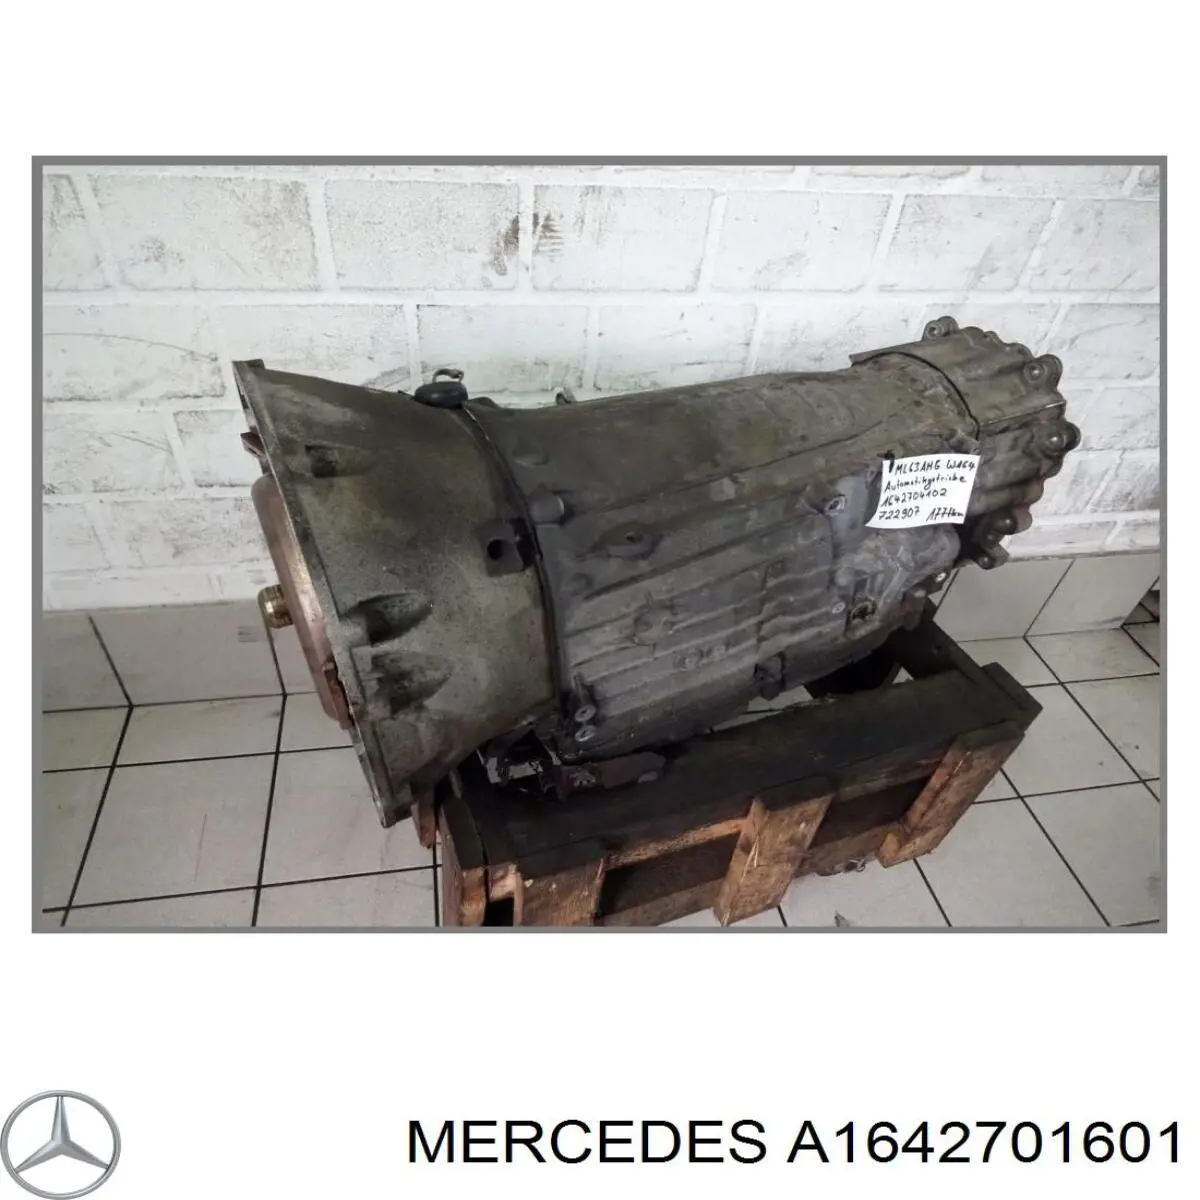 A1642703902 Mercedes акпп в сборе (автоматическая коробка передач)